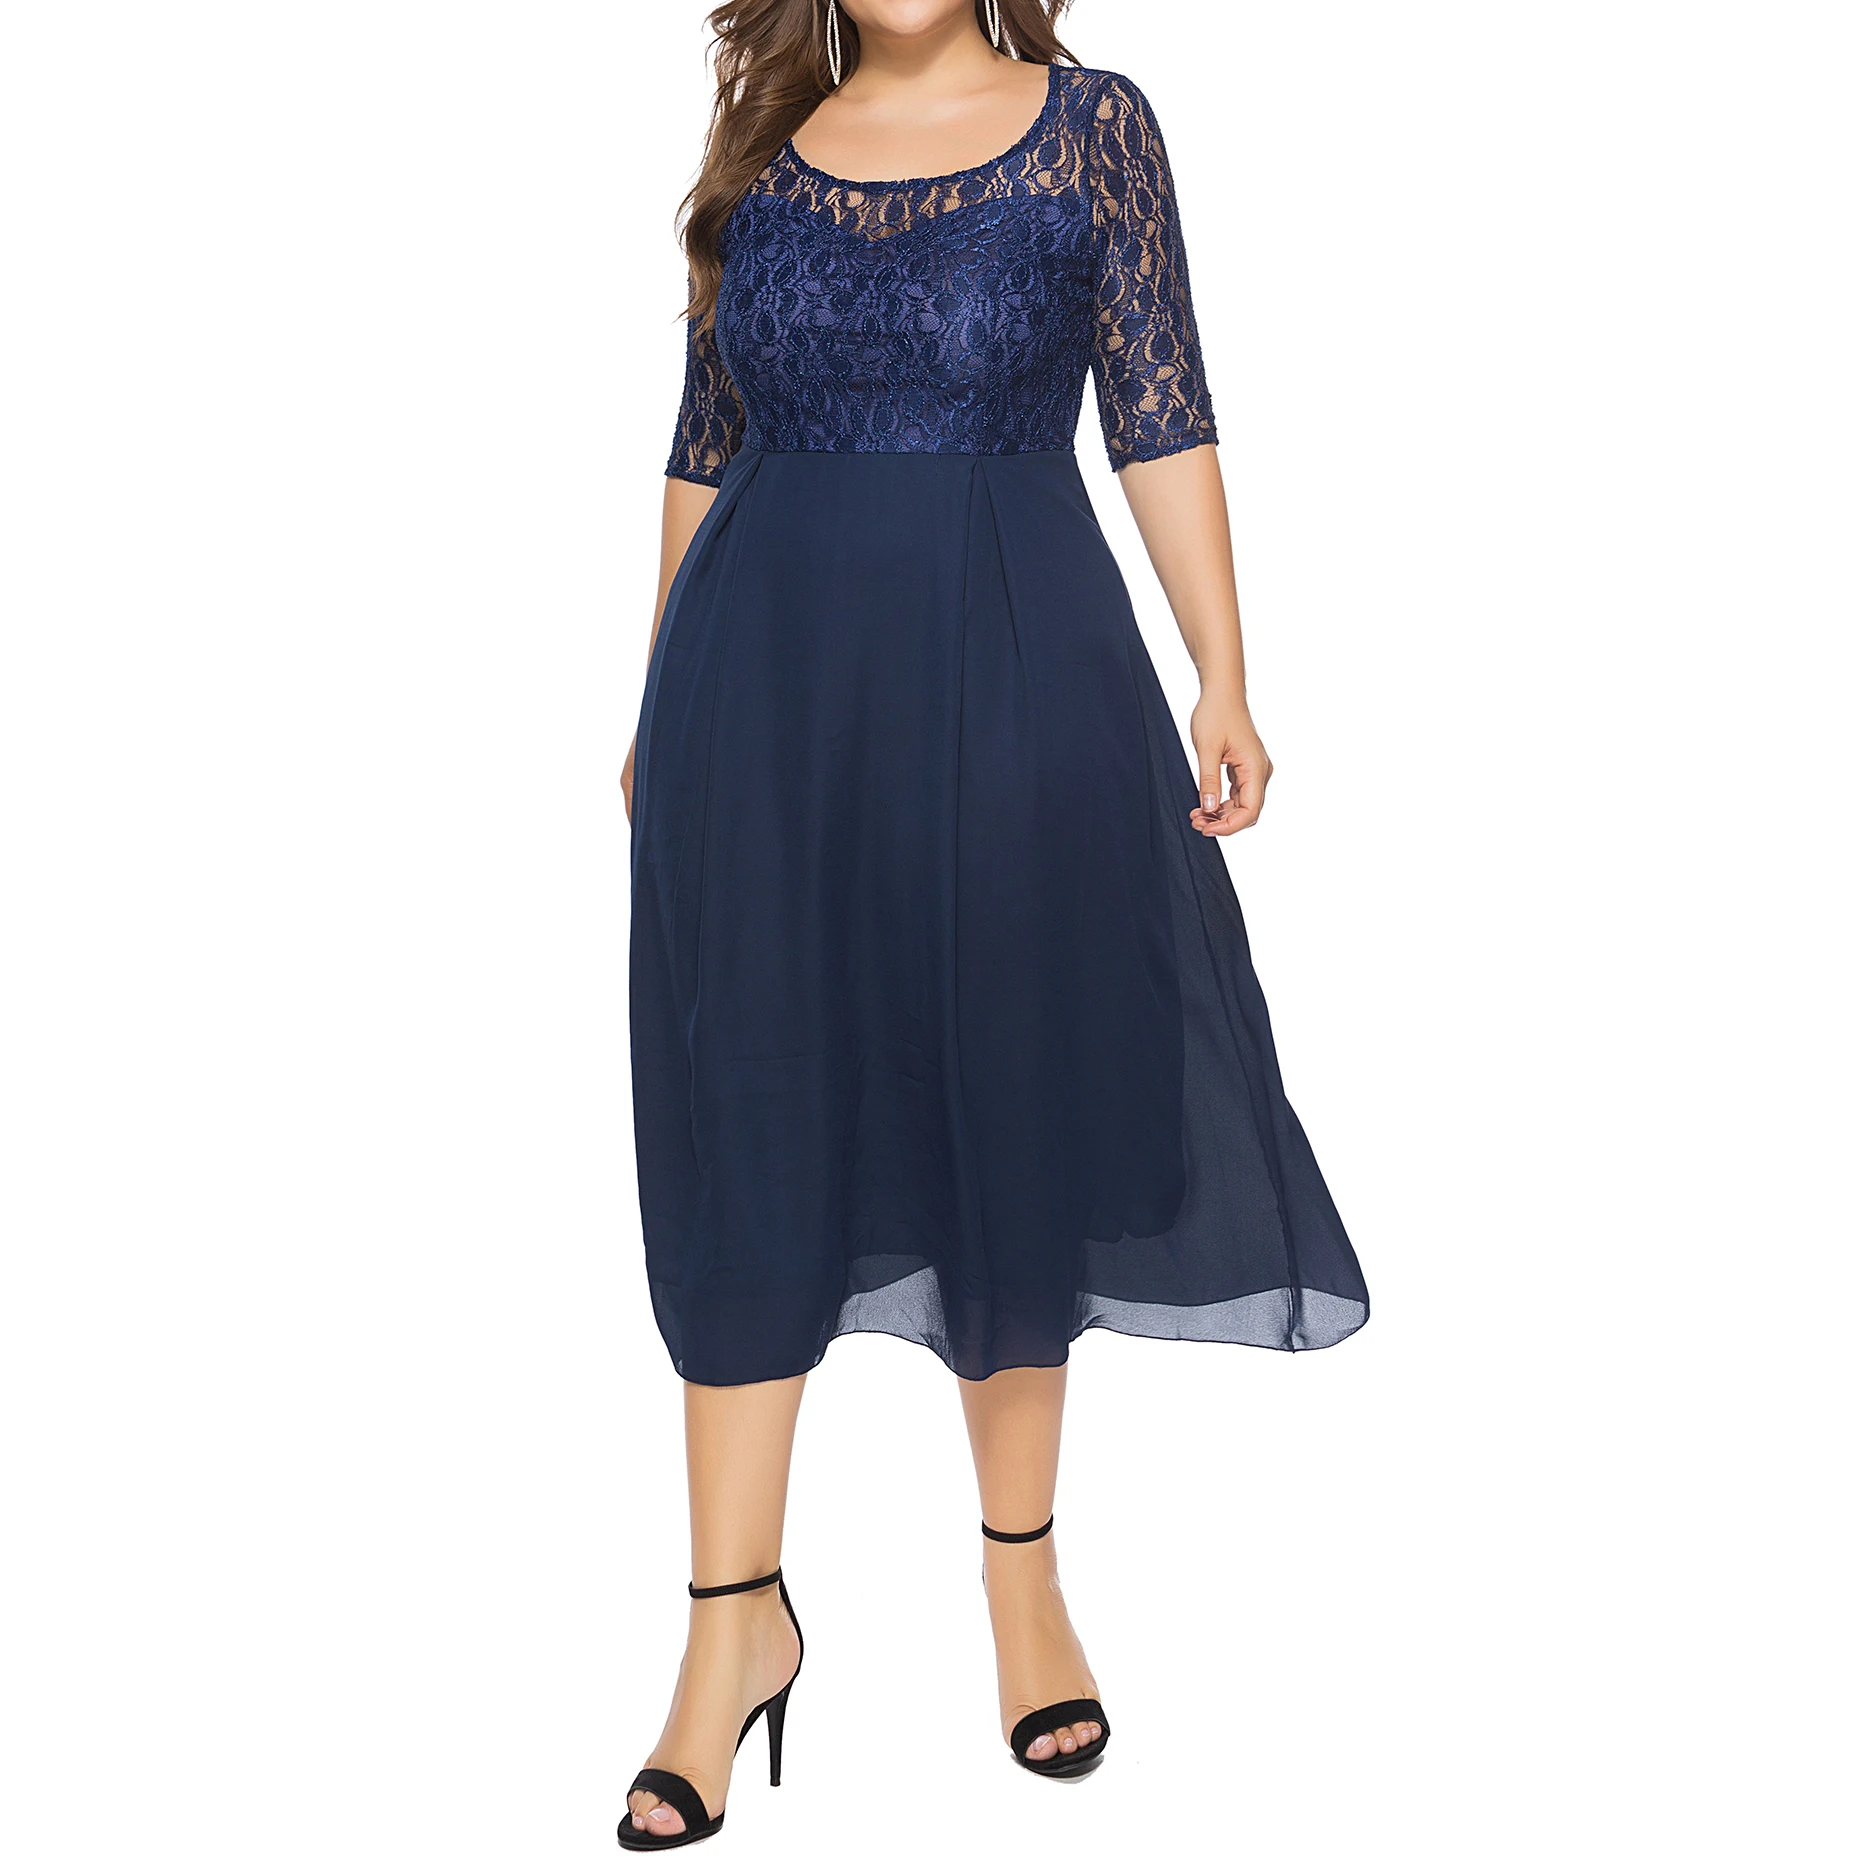 Wholesale Plus Size Apparel Mature Fat Women Black Lace Dresses - Buy ...